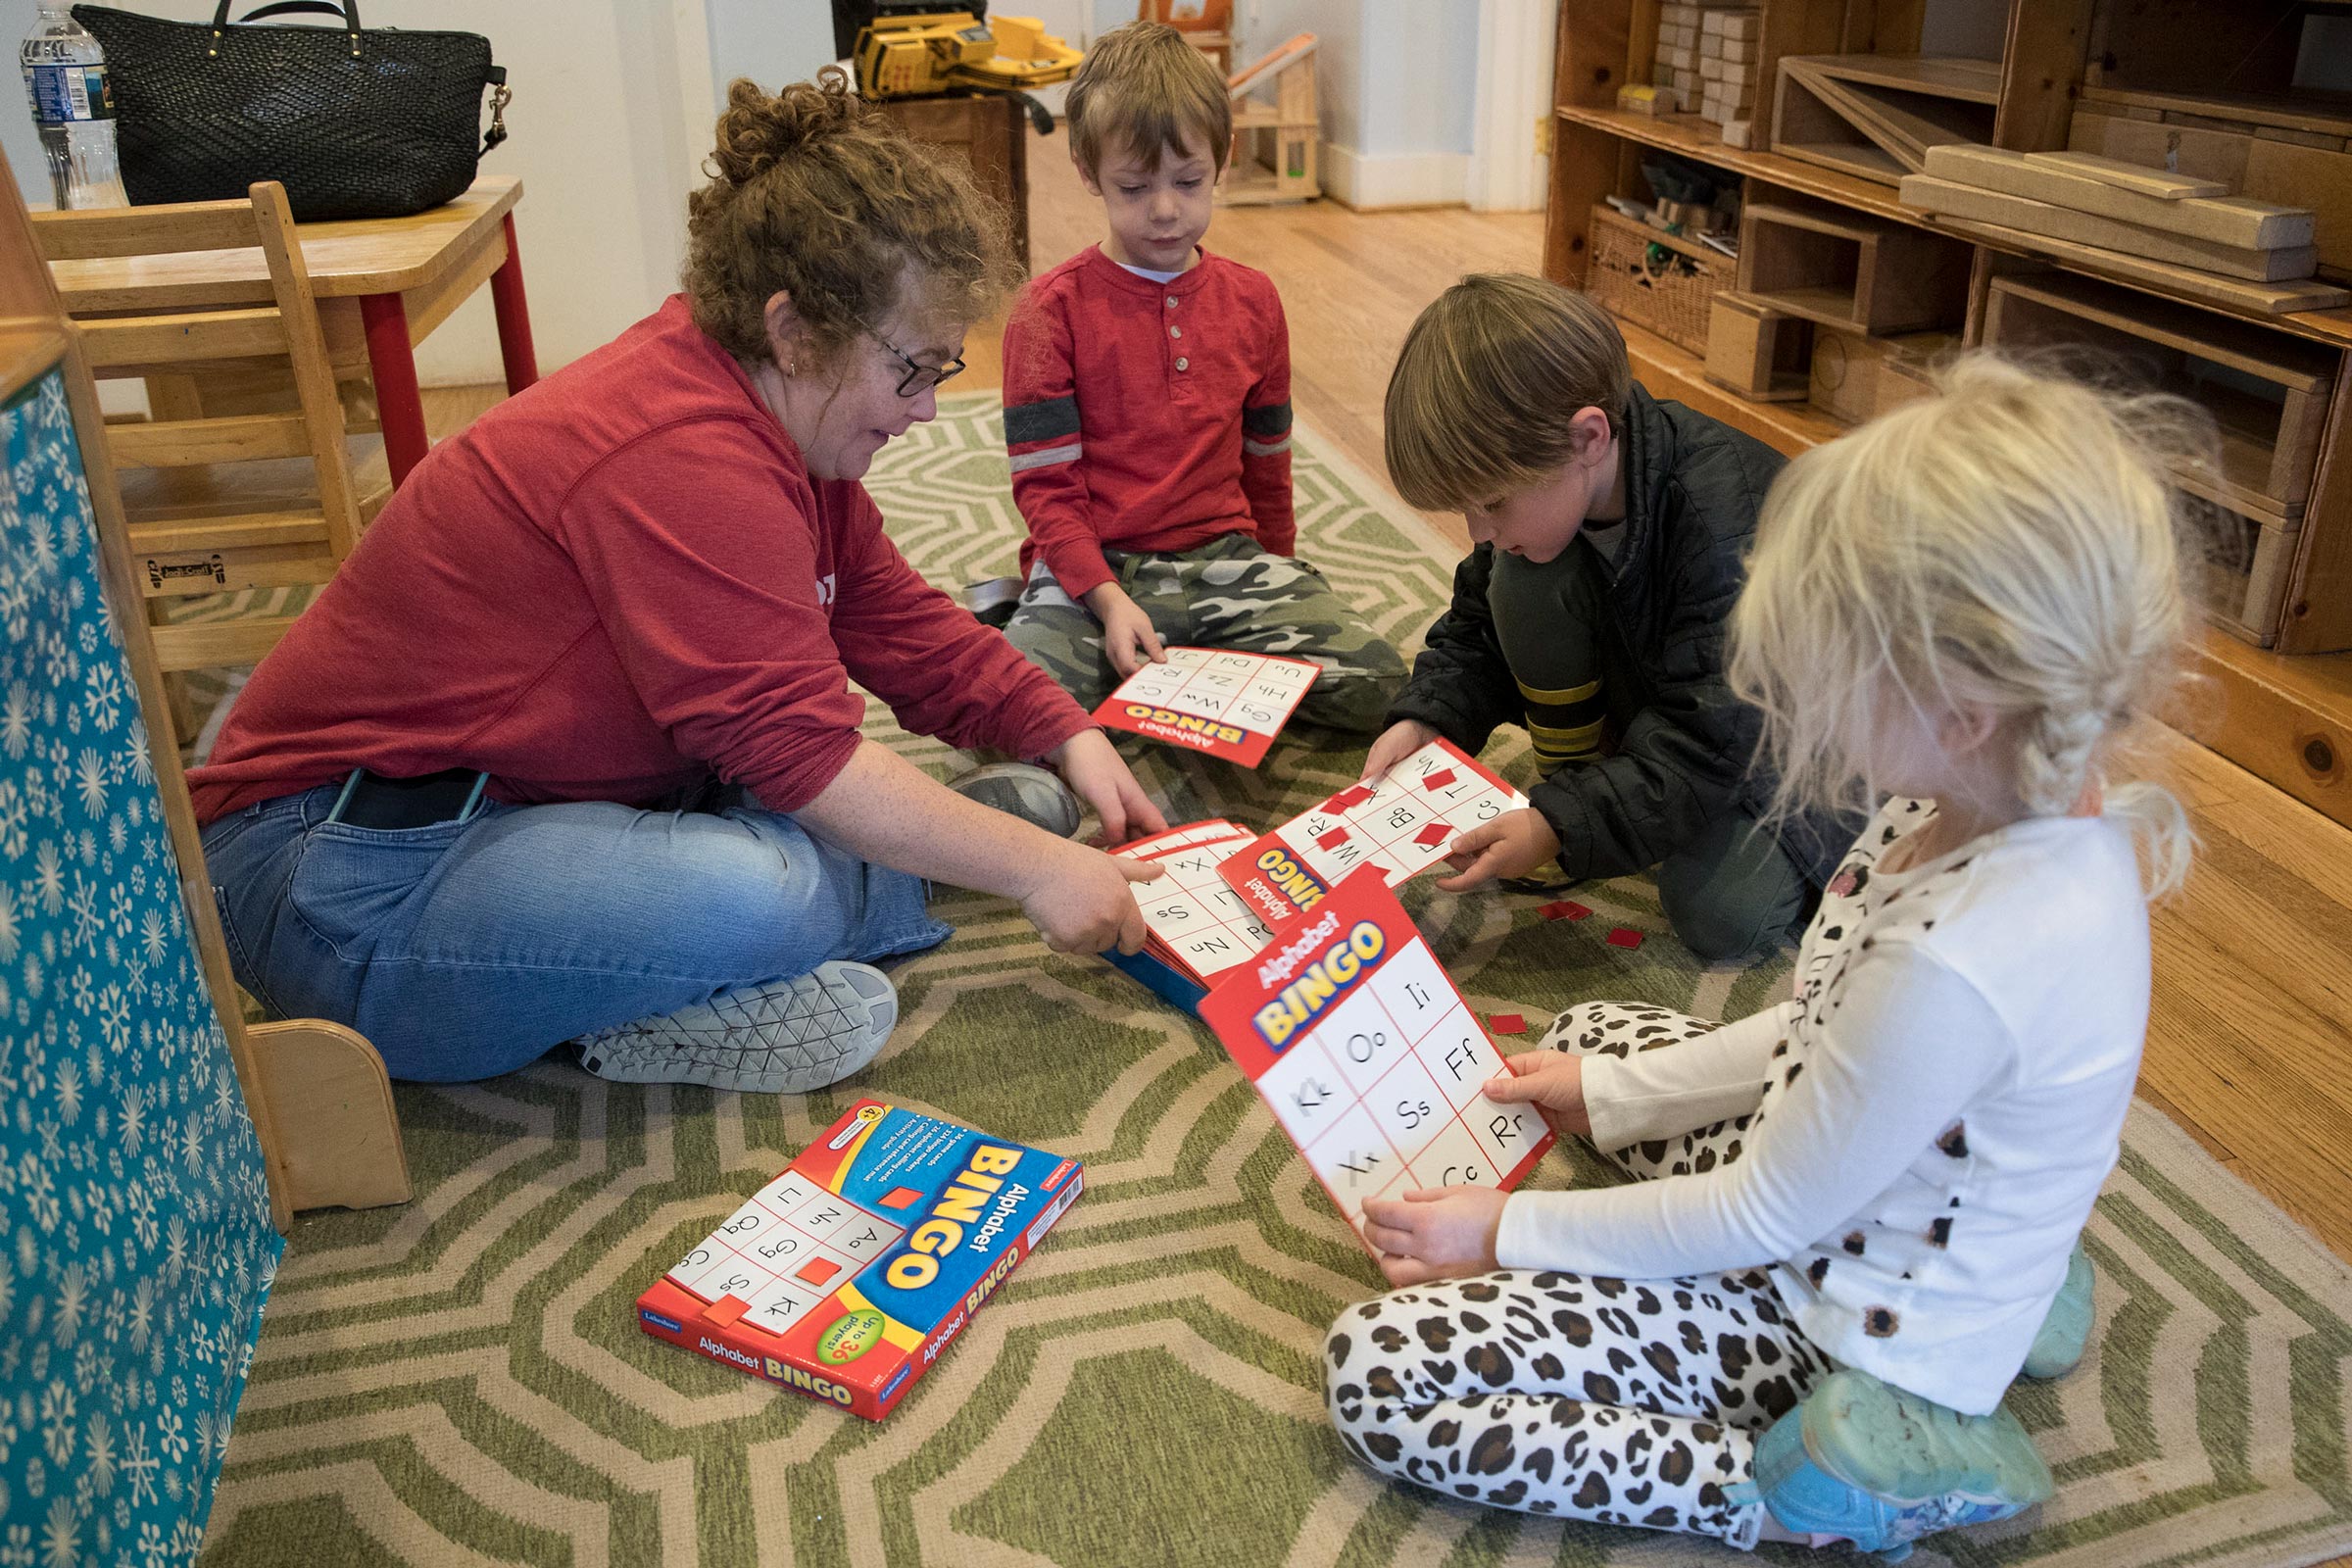 Kahn play preschool bingo with preschool children on the floor